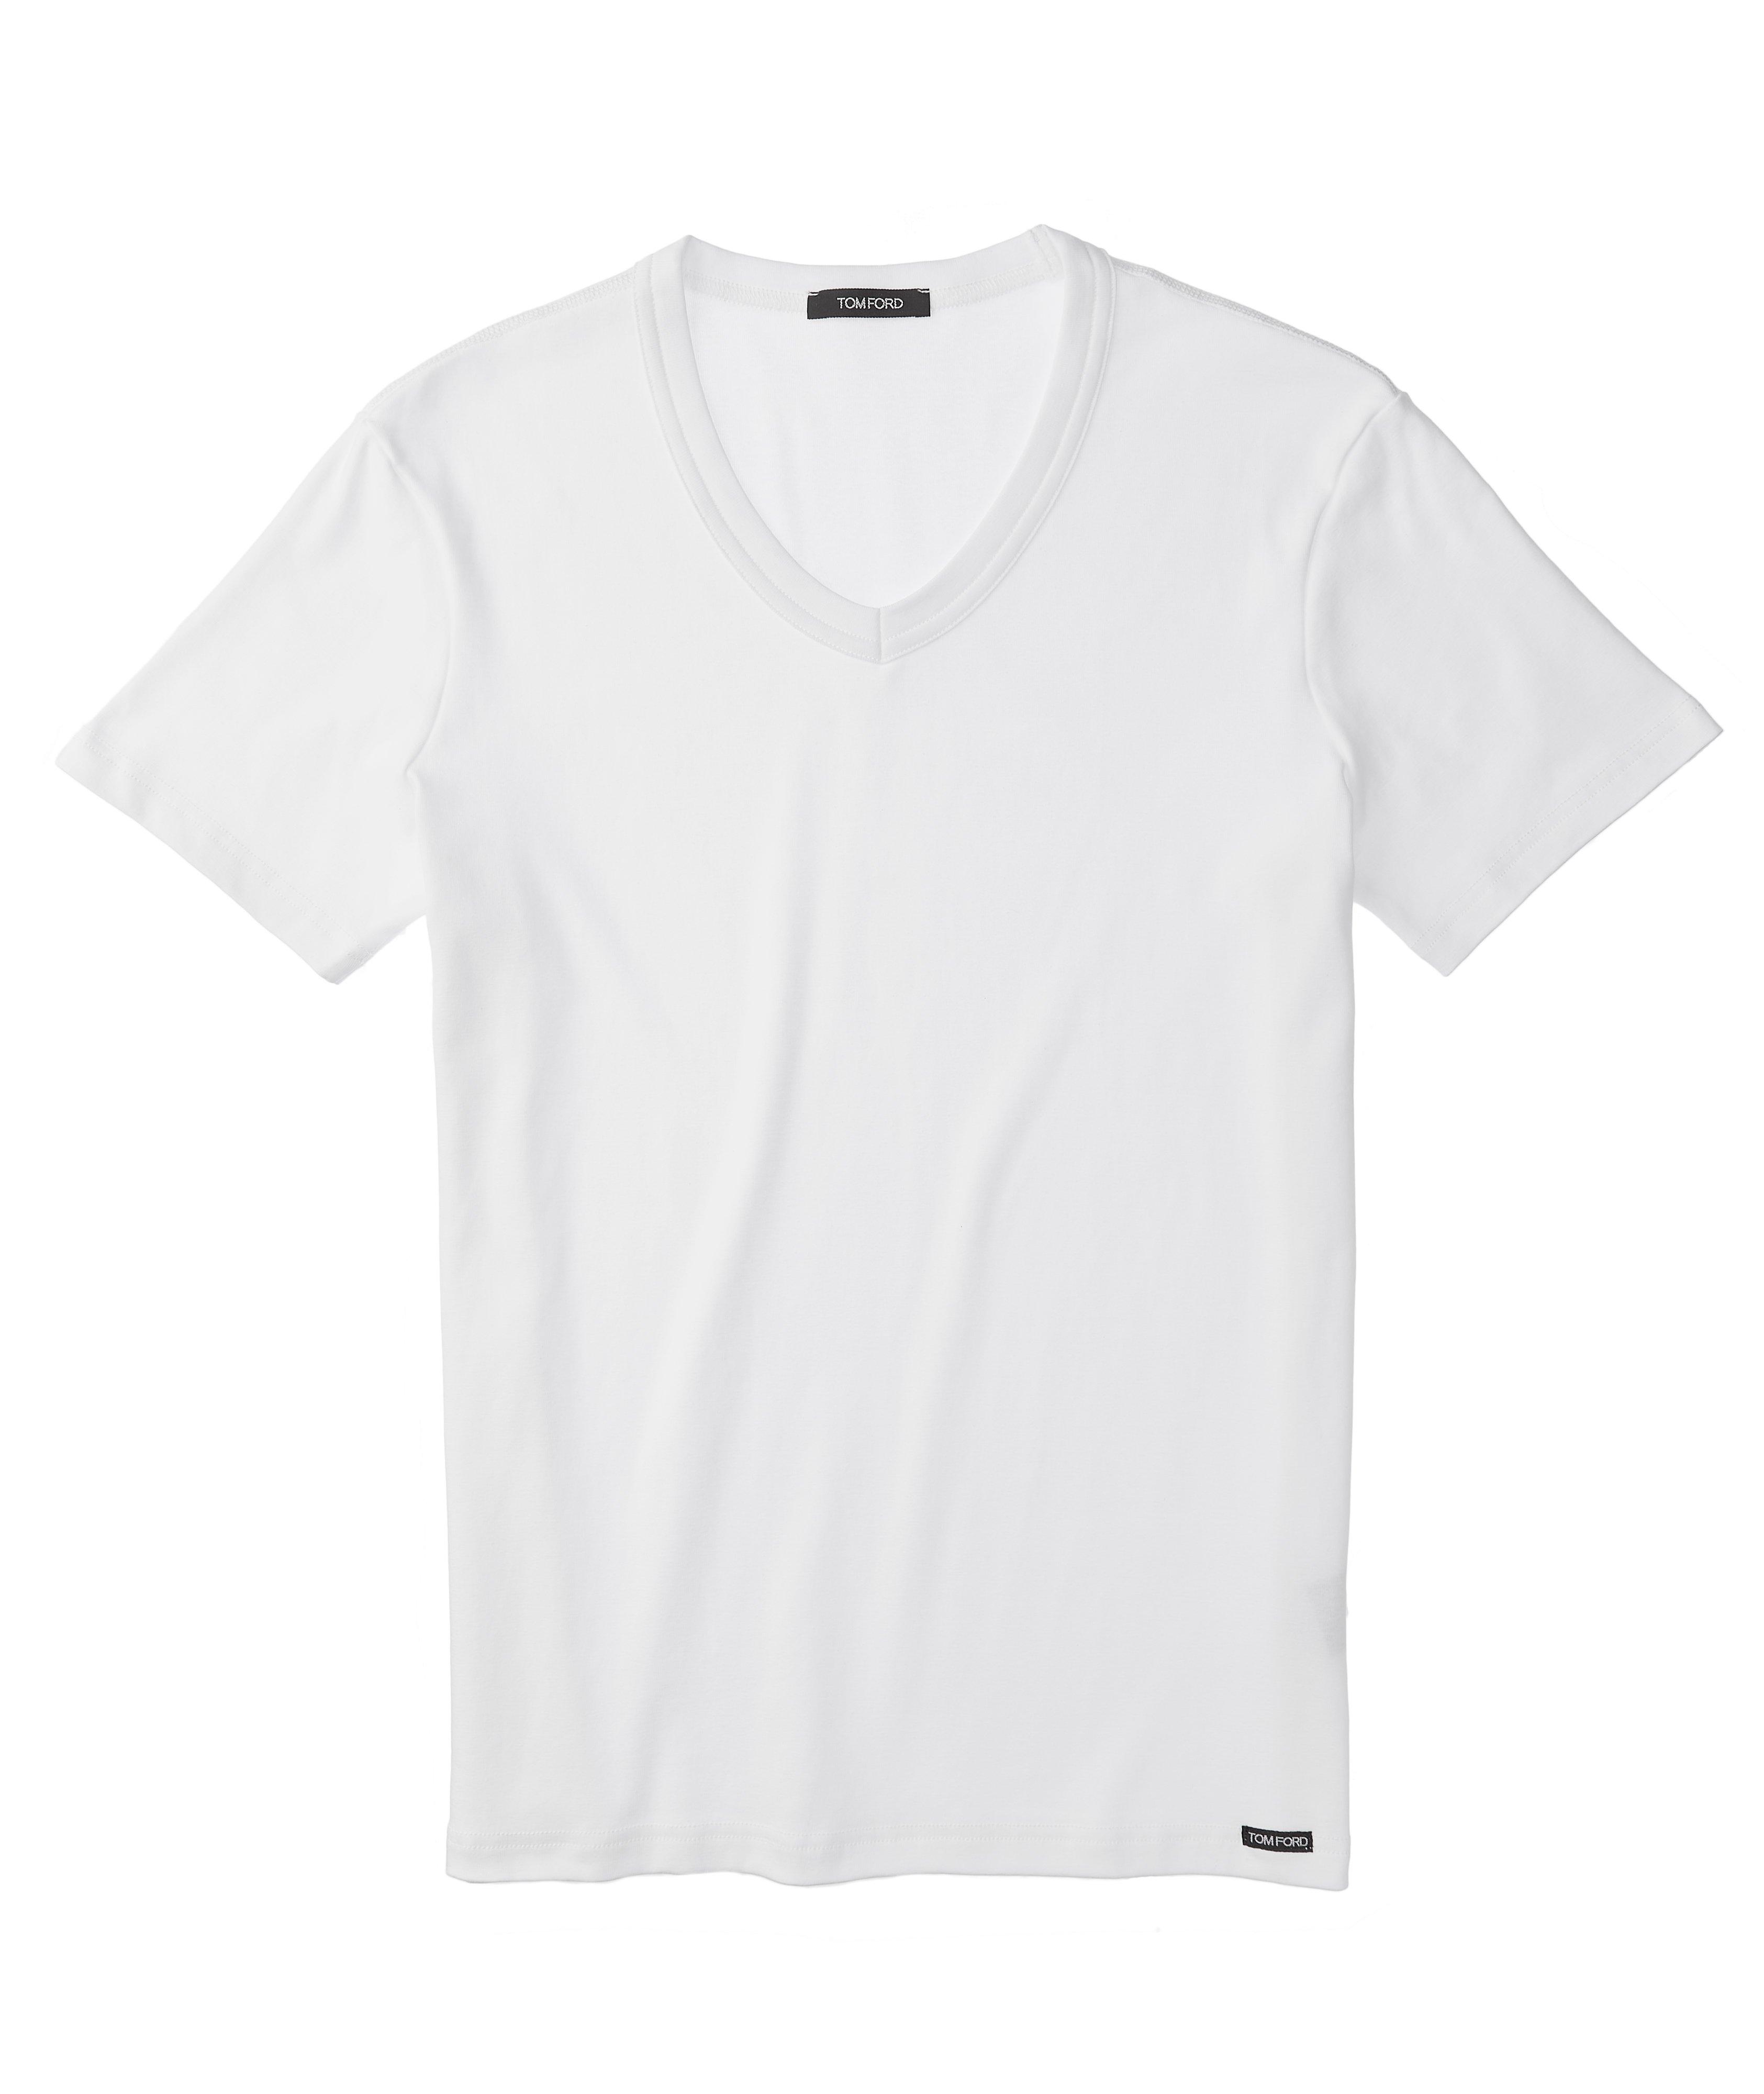 T-shirt en jersey de coton extensible à encolure en V image 0